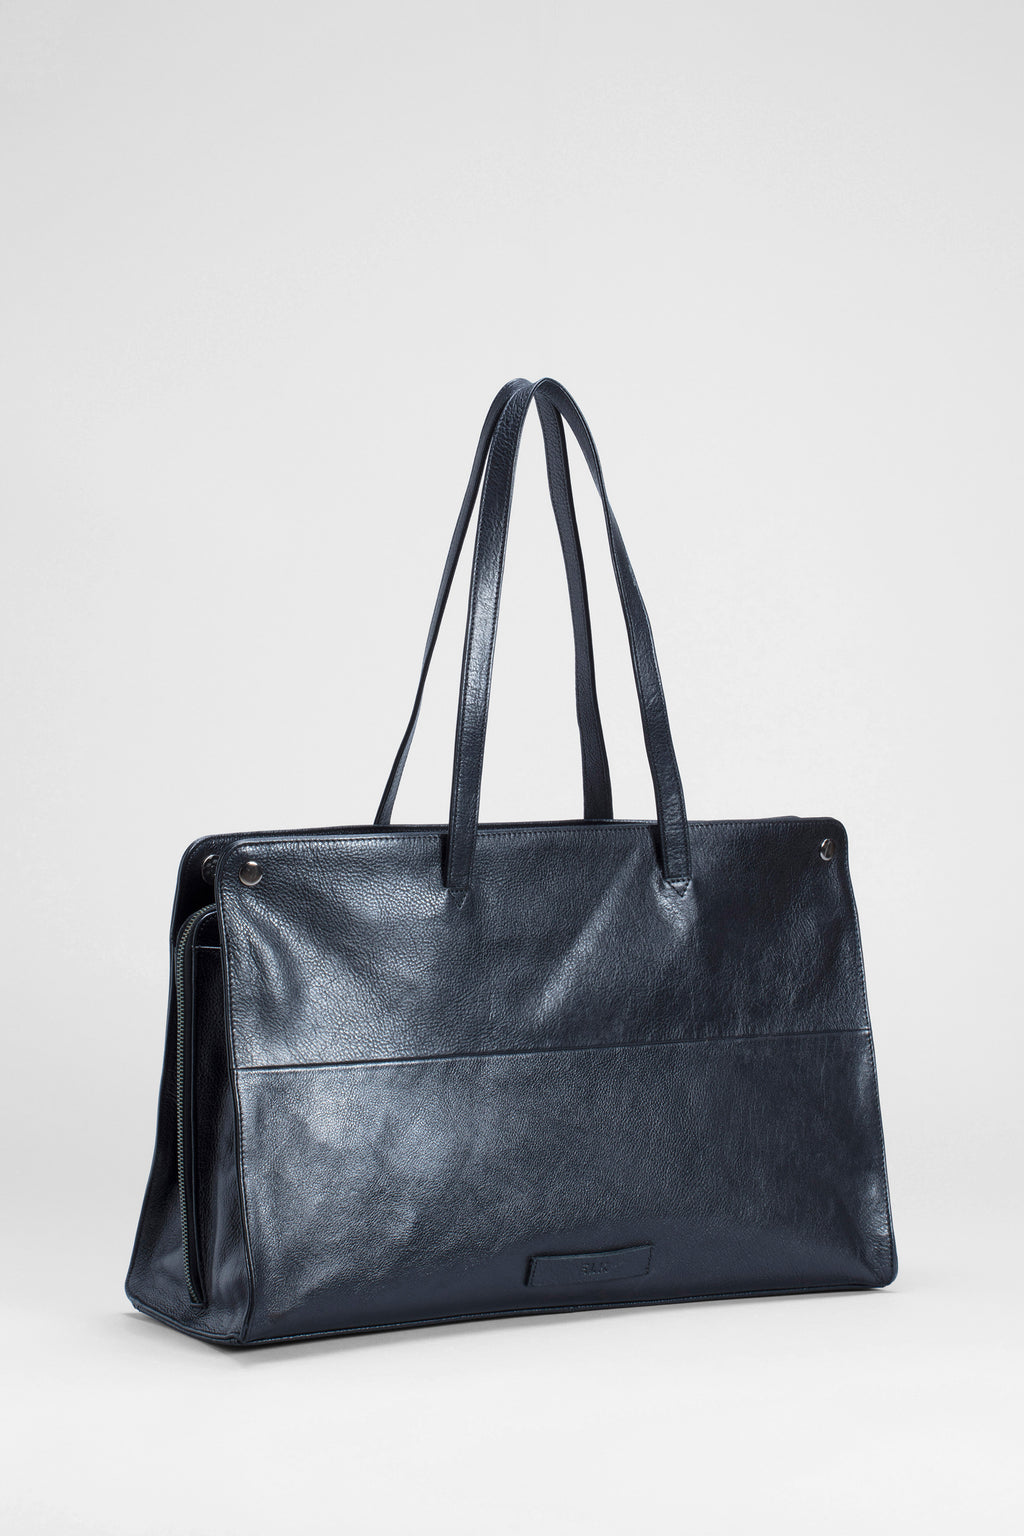 Edda Large Bag by ELK: Designed in Melbourne | ELK Australia